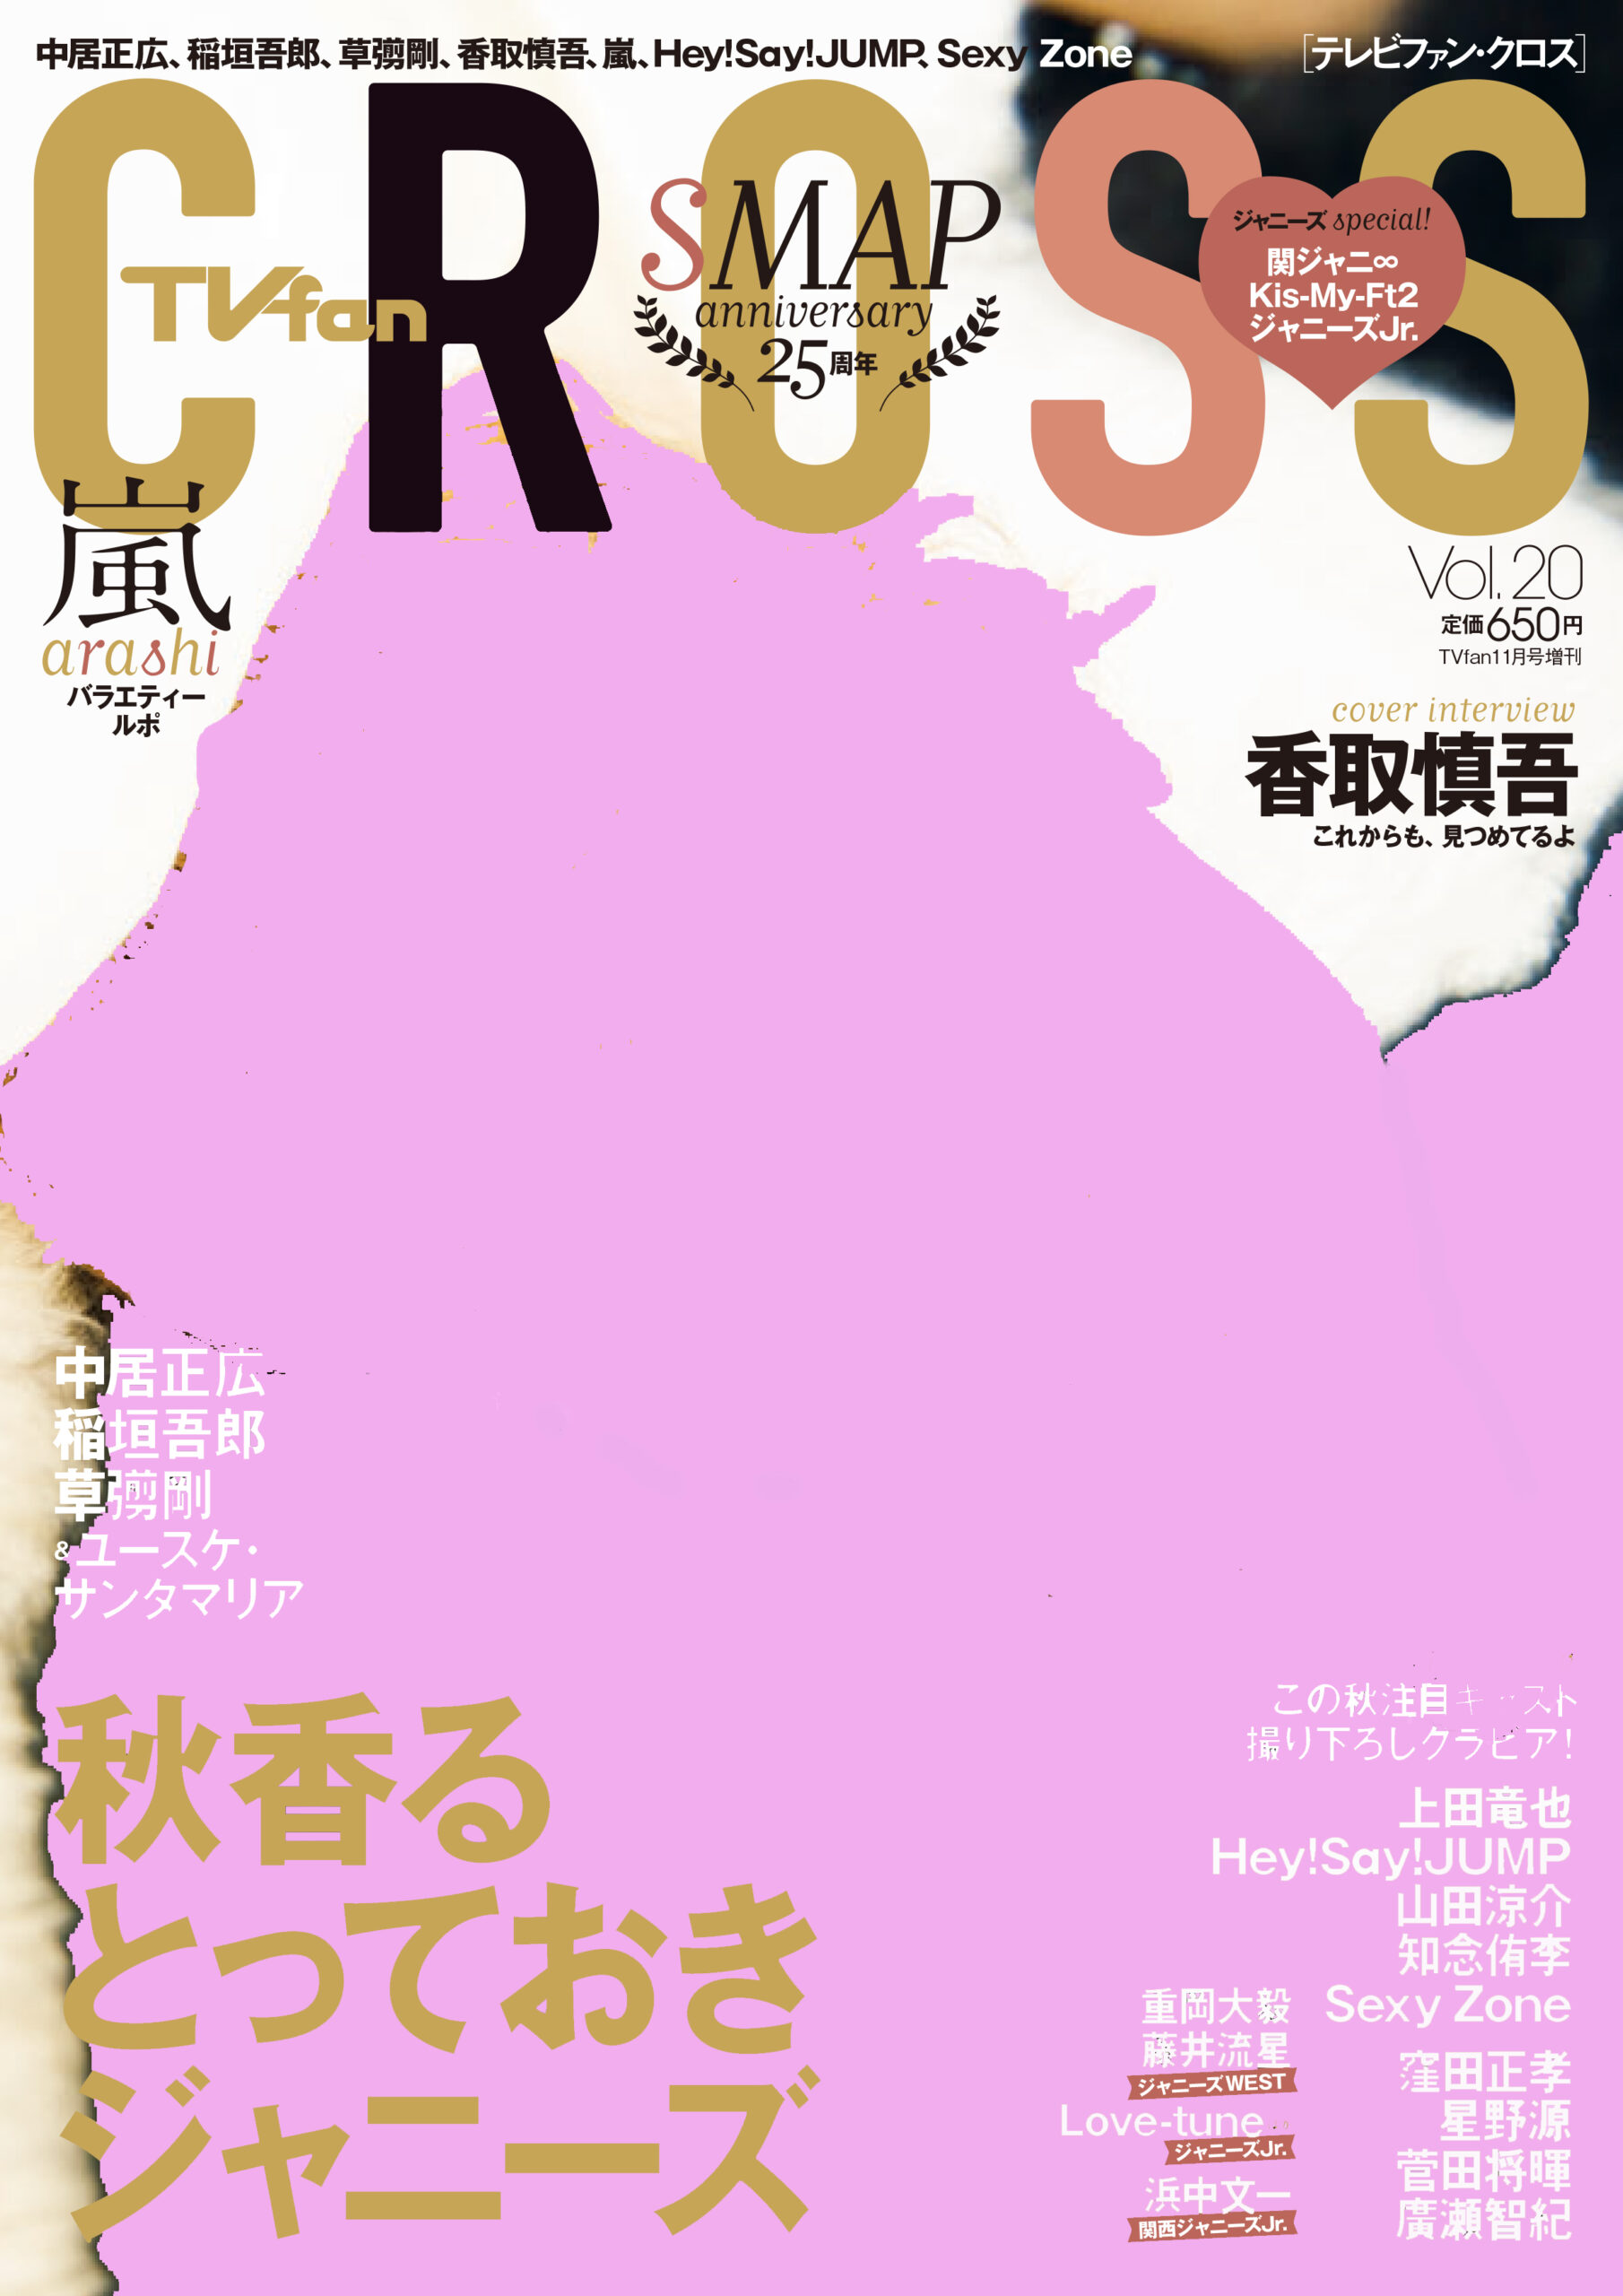 TV fan CROSS SMAP anniversary 25周年 - 雑誌